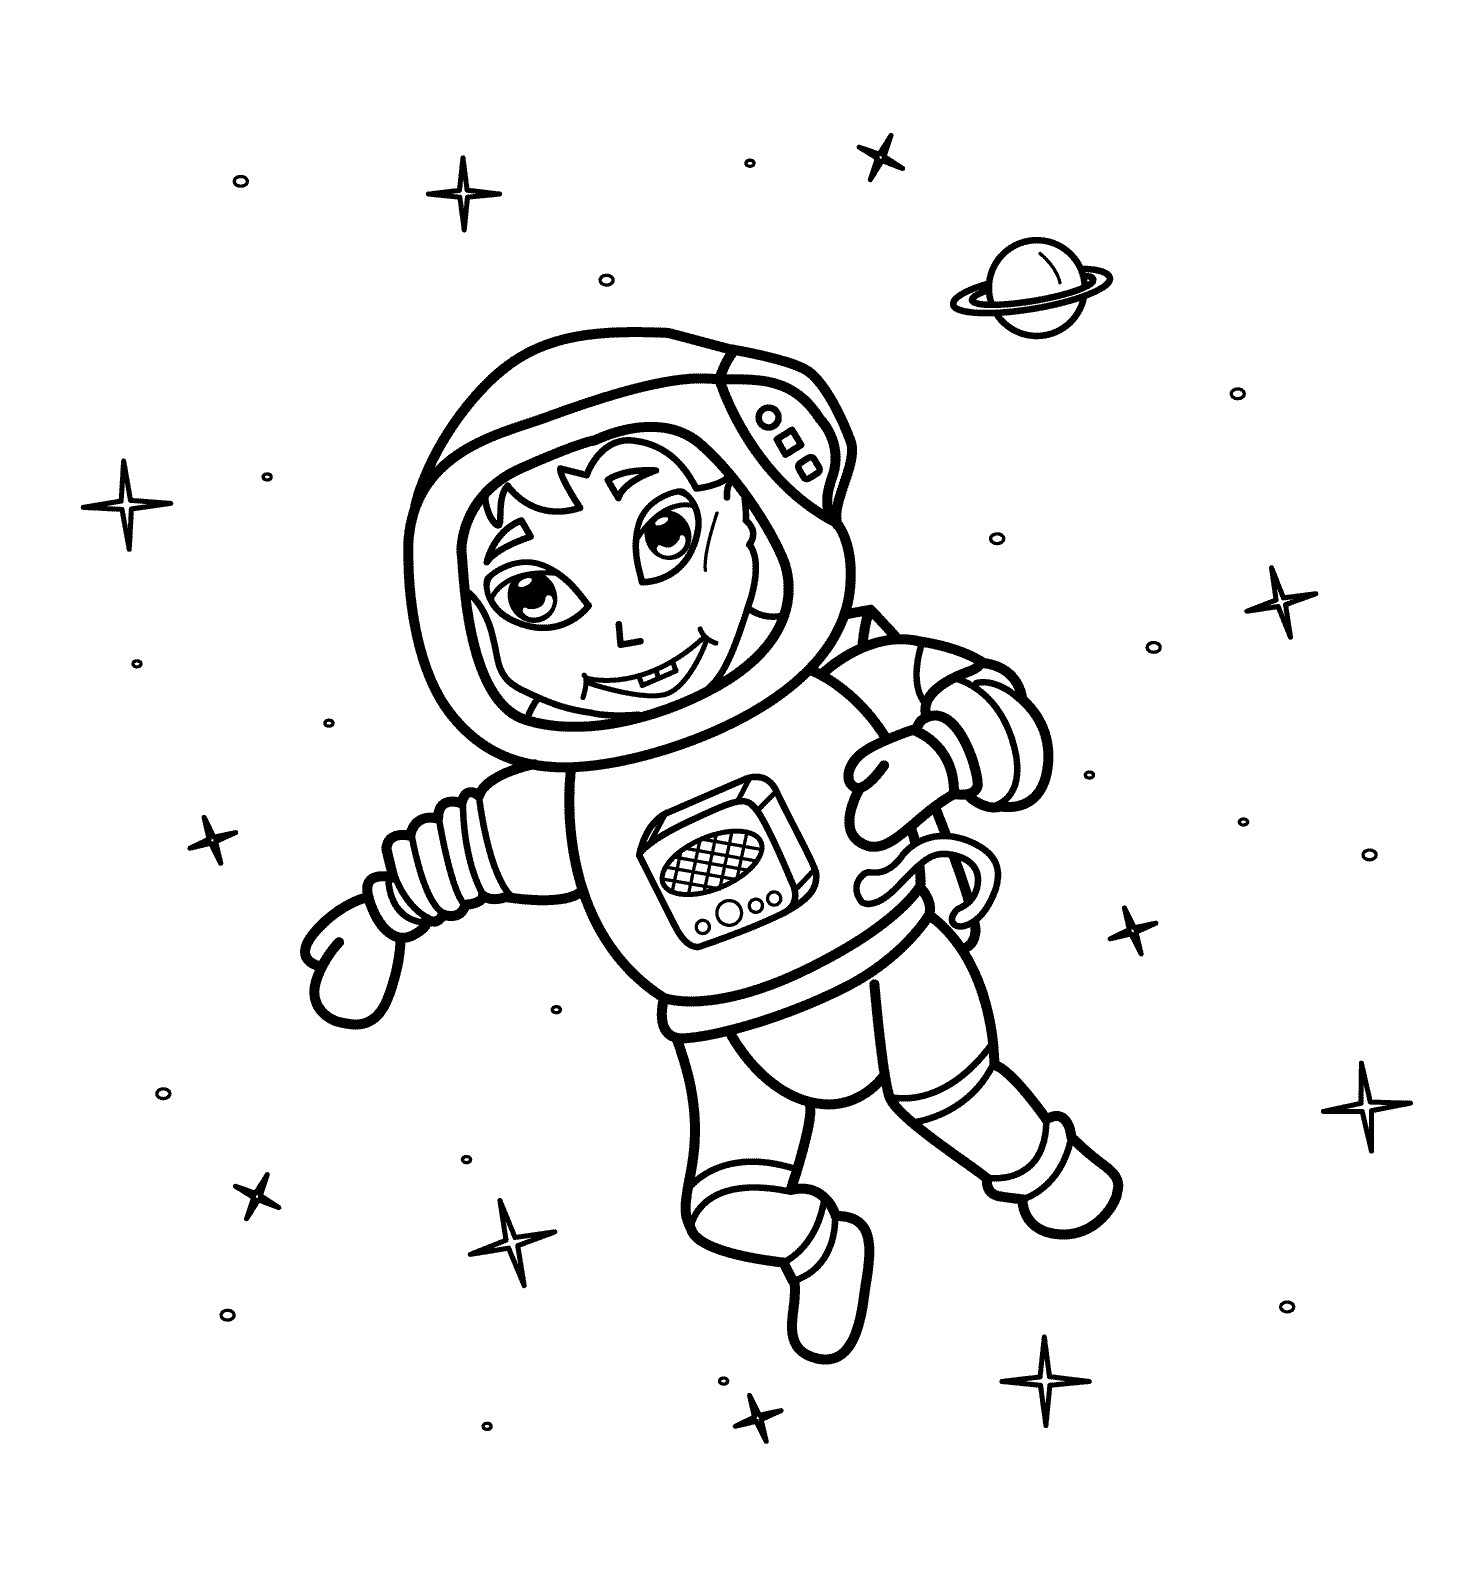 Детские раскраски ко дню космонавтики. Космонавт раскраска для детей. Космос раскраска для детей. Раскраска про космос и Космонавтов для детей. Космонавт для раскрашивания для детей.